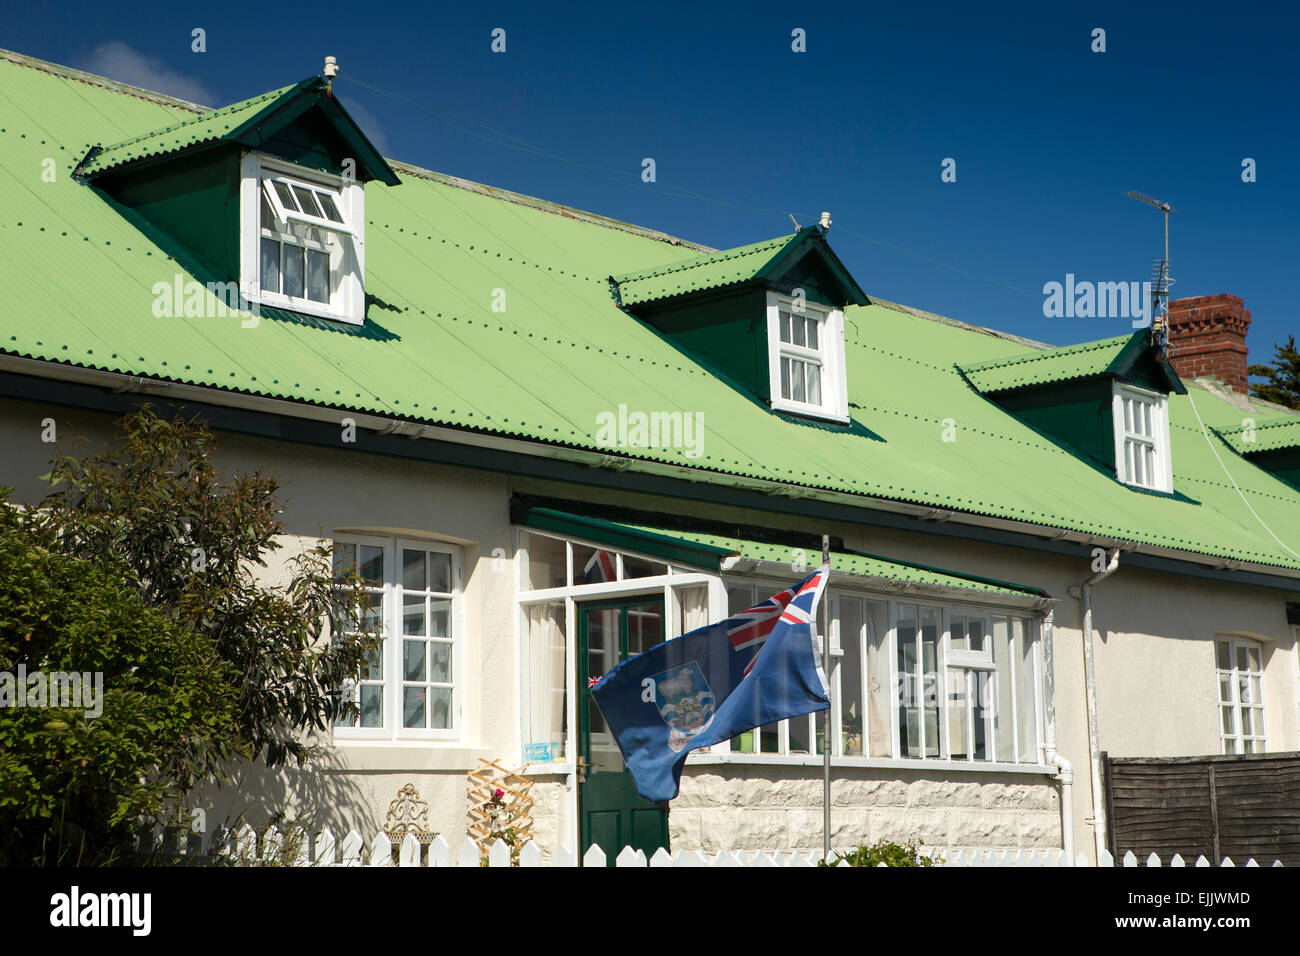 Falkland-Inseln, Port Stanley, Falkland-Inseln Flagge fliegende außen überdachte Gewächshaus Stockfoto